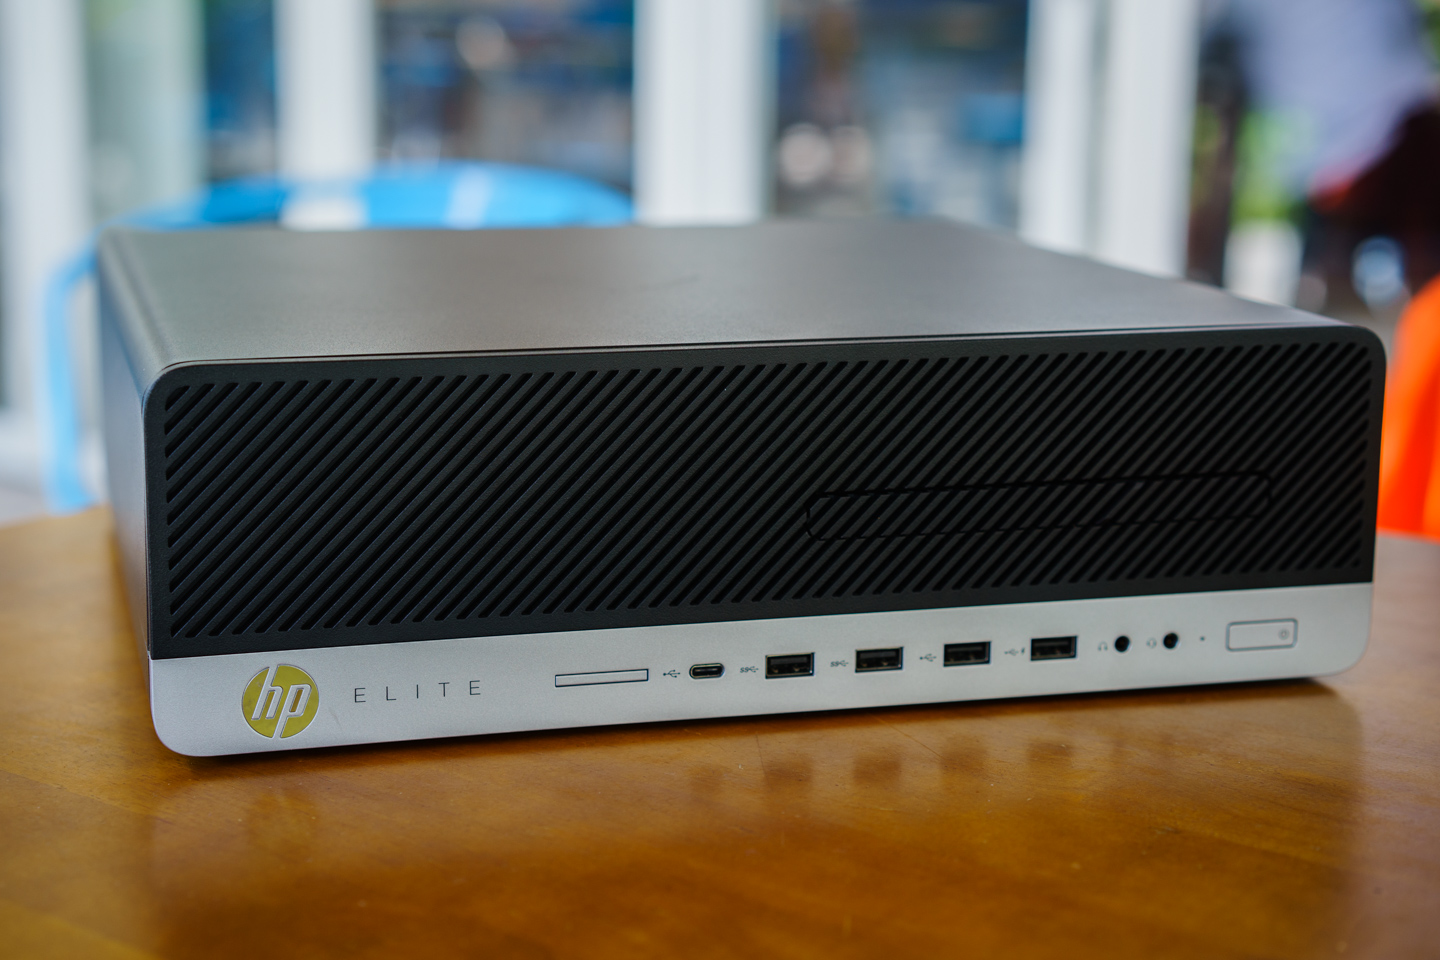 Đánh giá HP EliteDesk 800
G3 SFF: PC cấu hình mạnh, siêu bảo mật dành cho đối tượng
doanh nghiệp